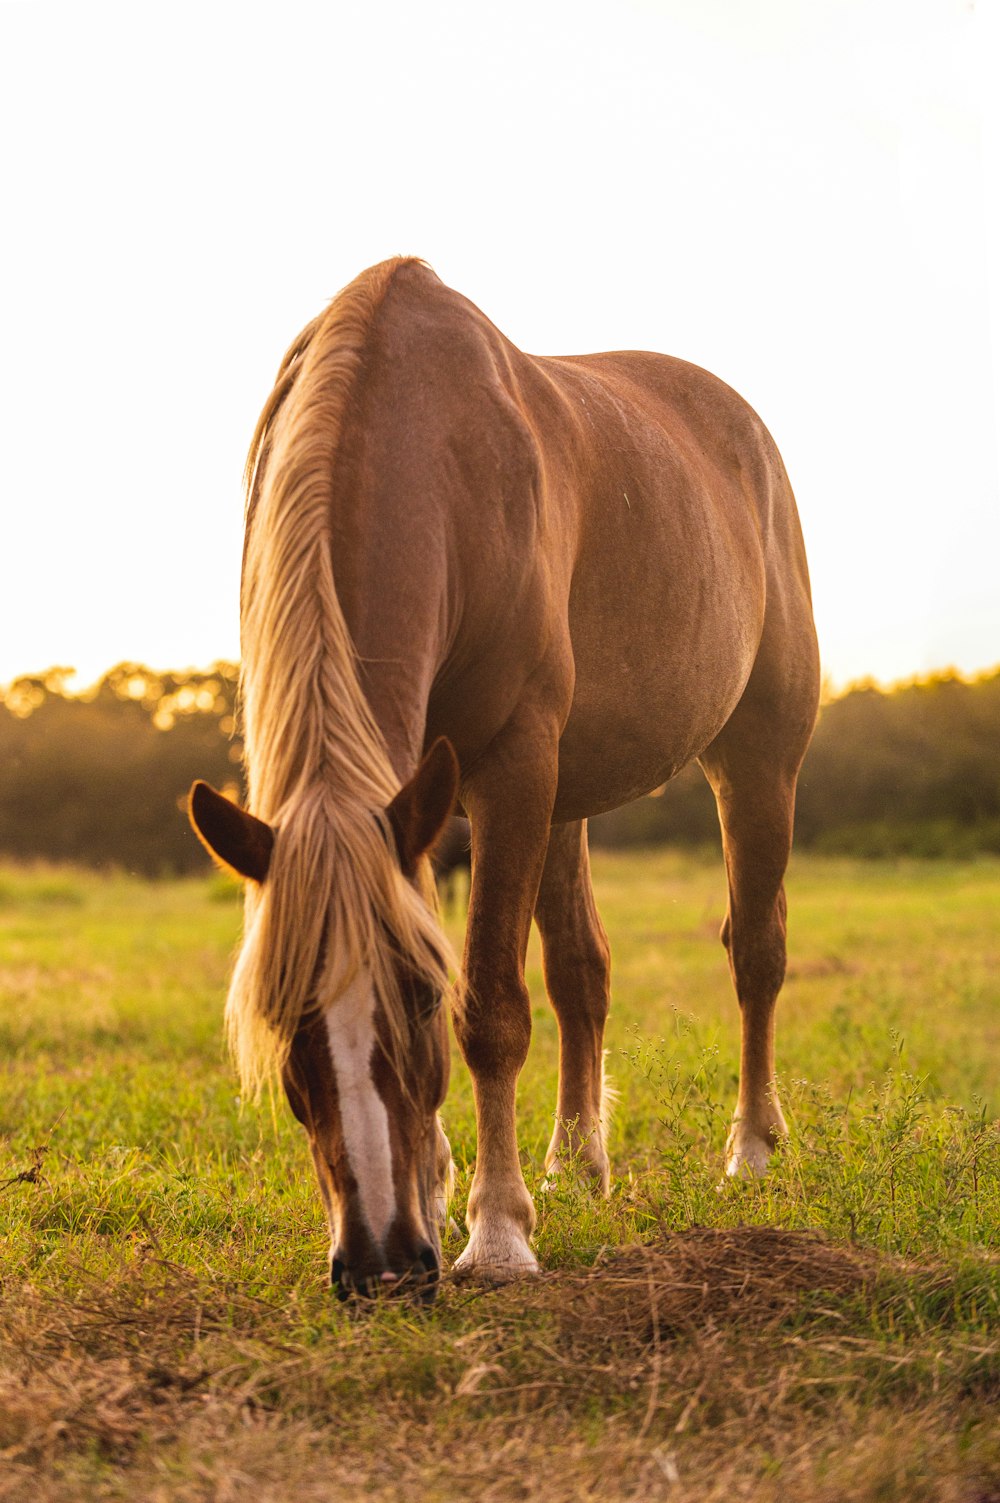 野原で草を食べる茶色の馬